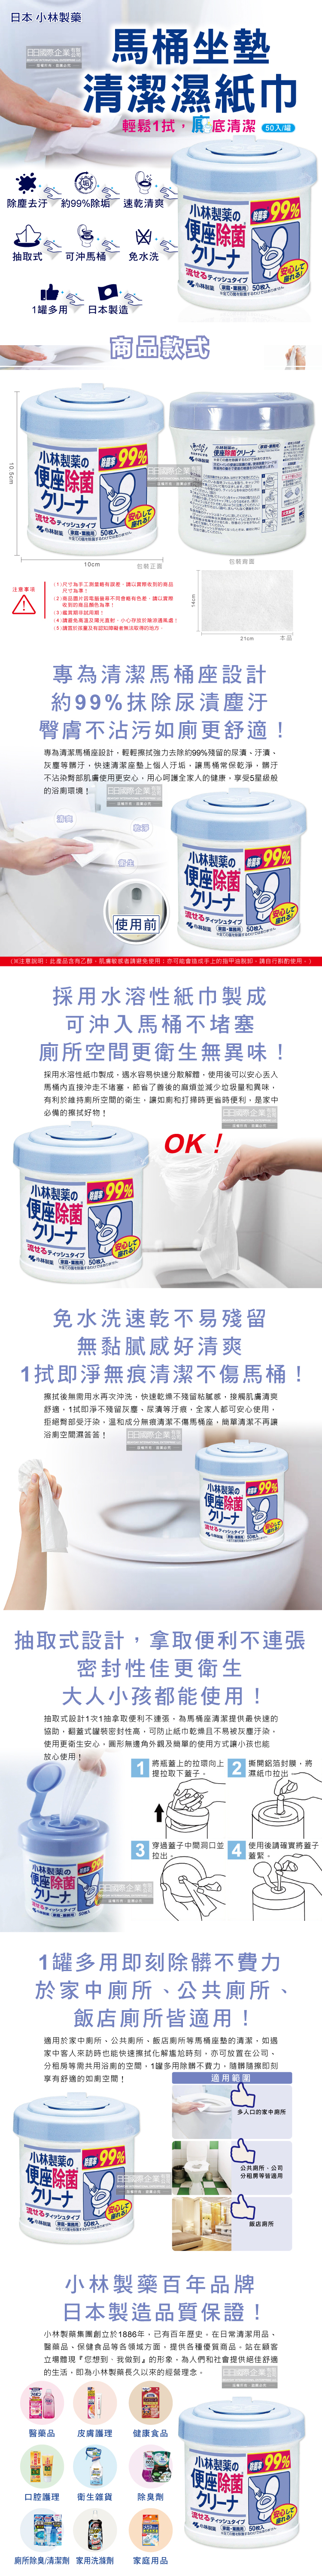 (清潔-馬桶)日本小林製藥-馬桶坐墊清潔濕紙巾50入罐裝介紹圖